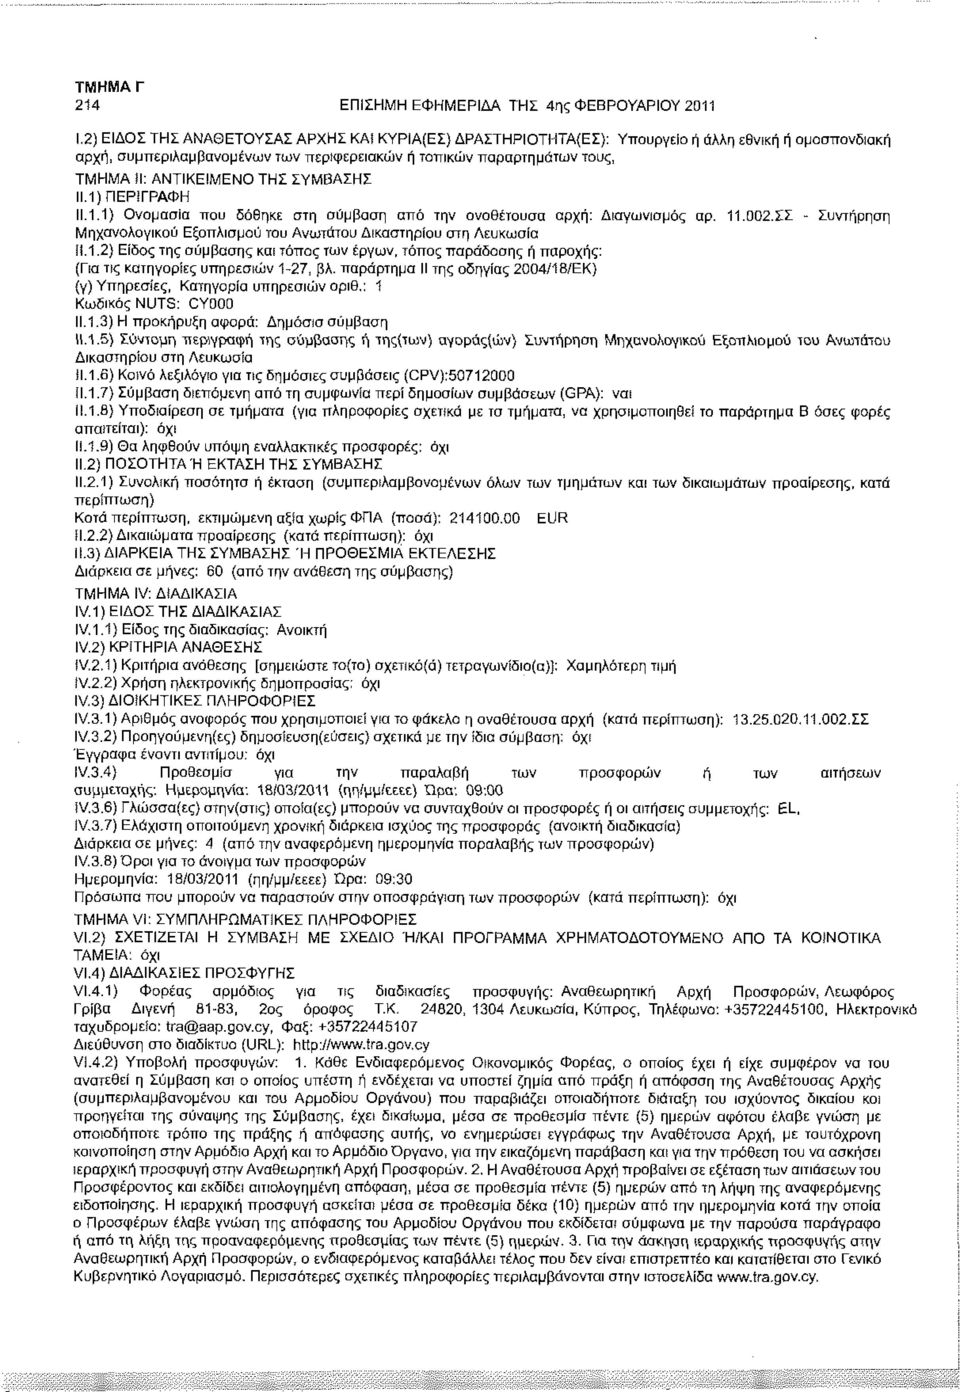 ΣΣ - Συντήρηση Μηχανολογικού Εξοπλισμού του Ανωτάτου Δικαστηρίου στη Λευκωσία!Ι.1.2) Είδος της σύμβασης και τόπος των έργων, τόπος παράδοσης ή παροχής: (Για τις κατηγορίες υπηρεσιών 1-27, βλ.